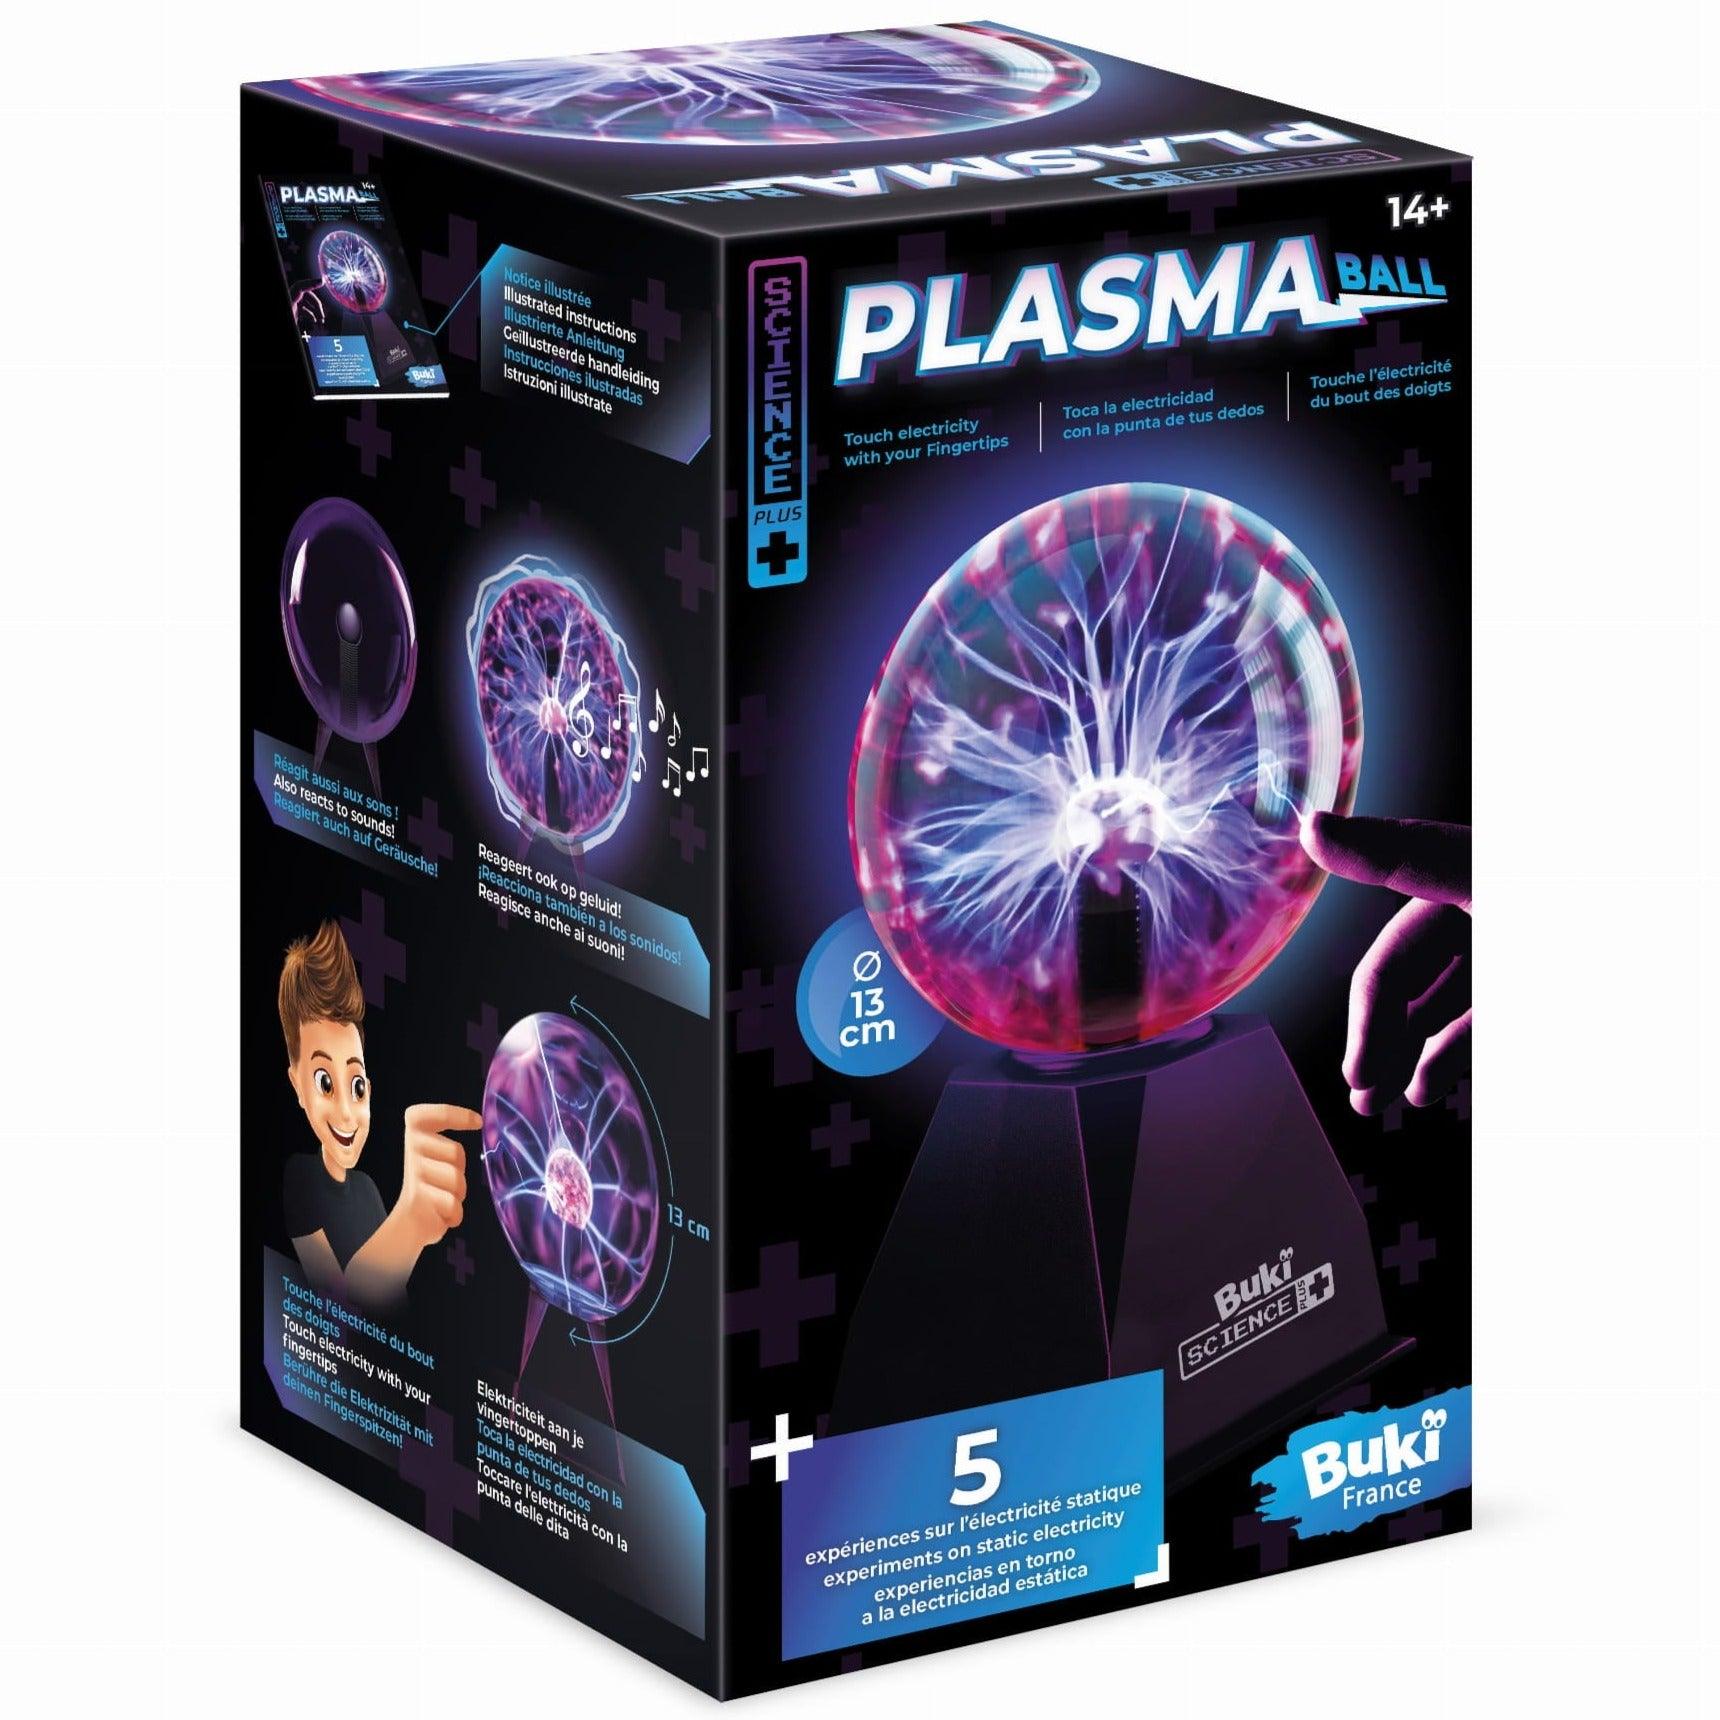 Buki: Bola de plasma brilhante 13 cm